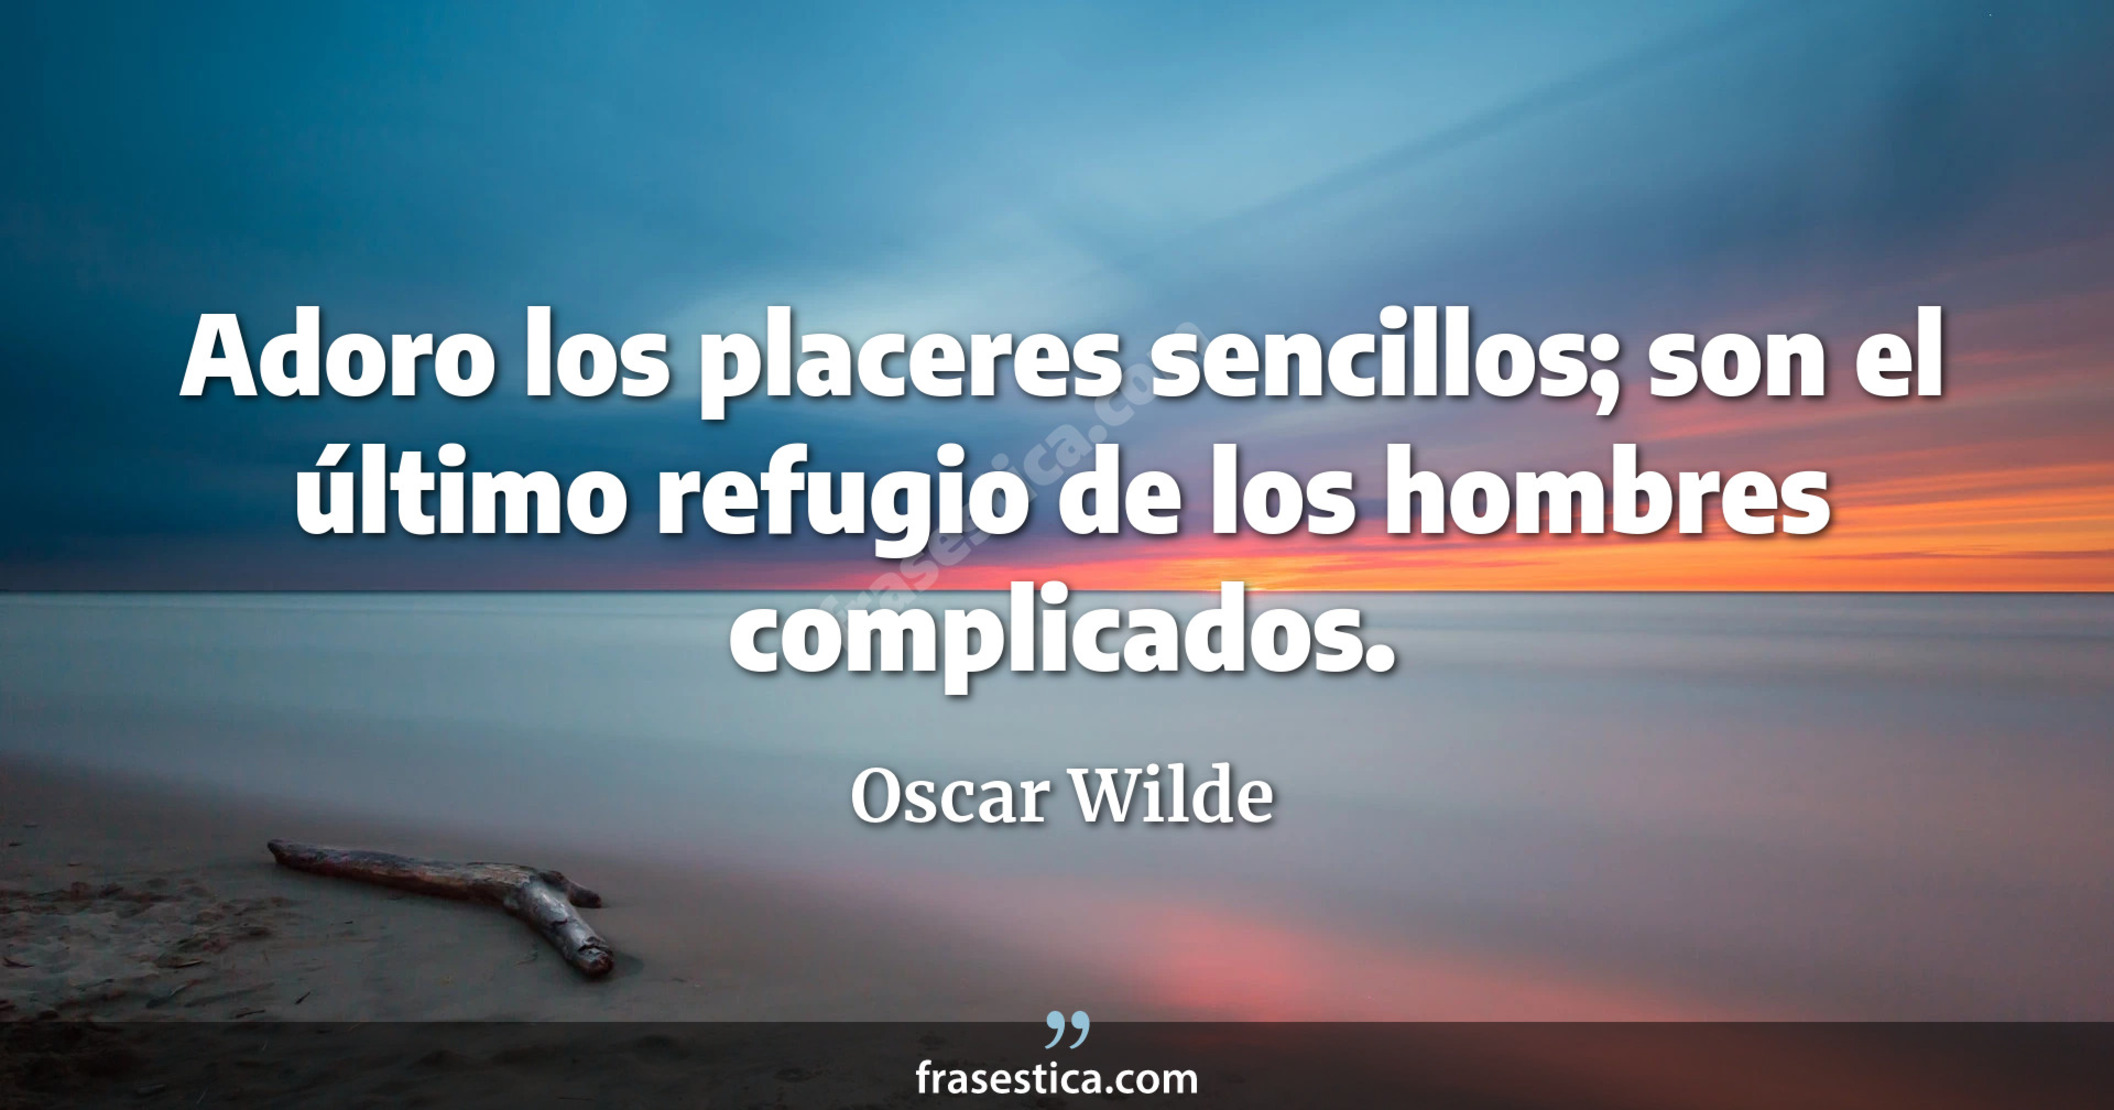 Adoro los placeres sencillos; son el último refugio de los hombres complicados. - Oscar Wilde